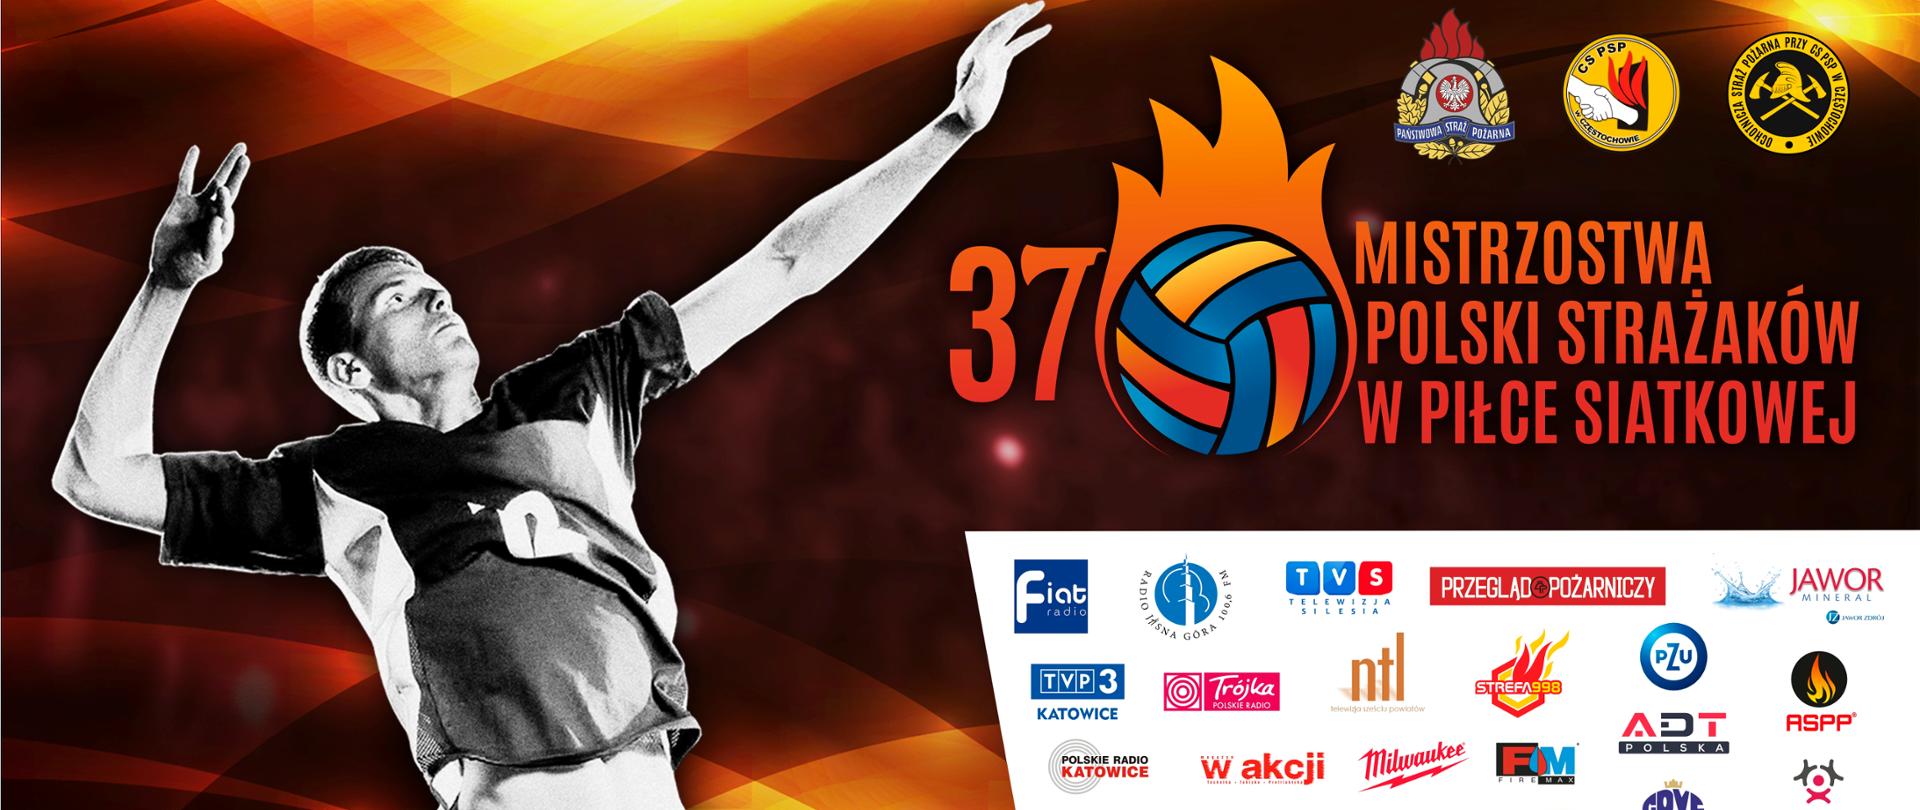 Baner reklamowy 37 Mistrzostw Polski Strażaków w Piłce Siatkowej